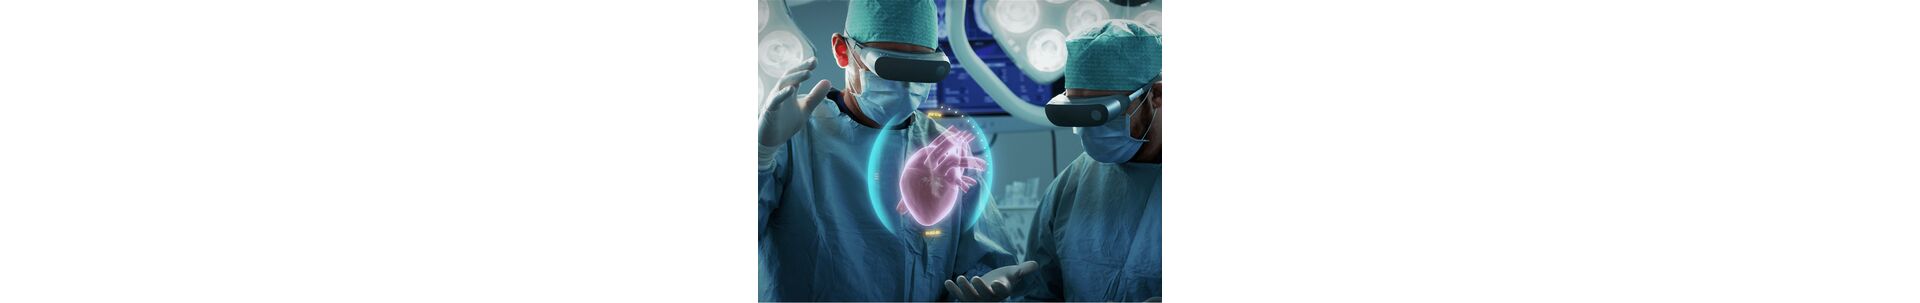 Почему российская медицина не готова к VR?